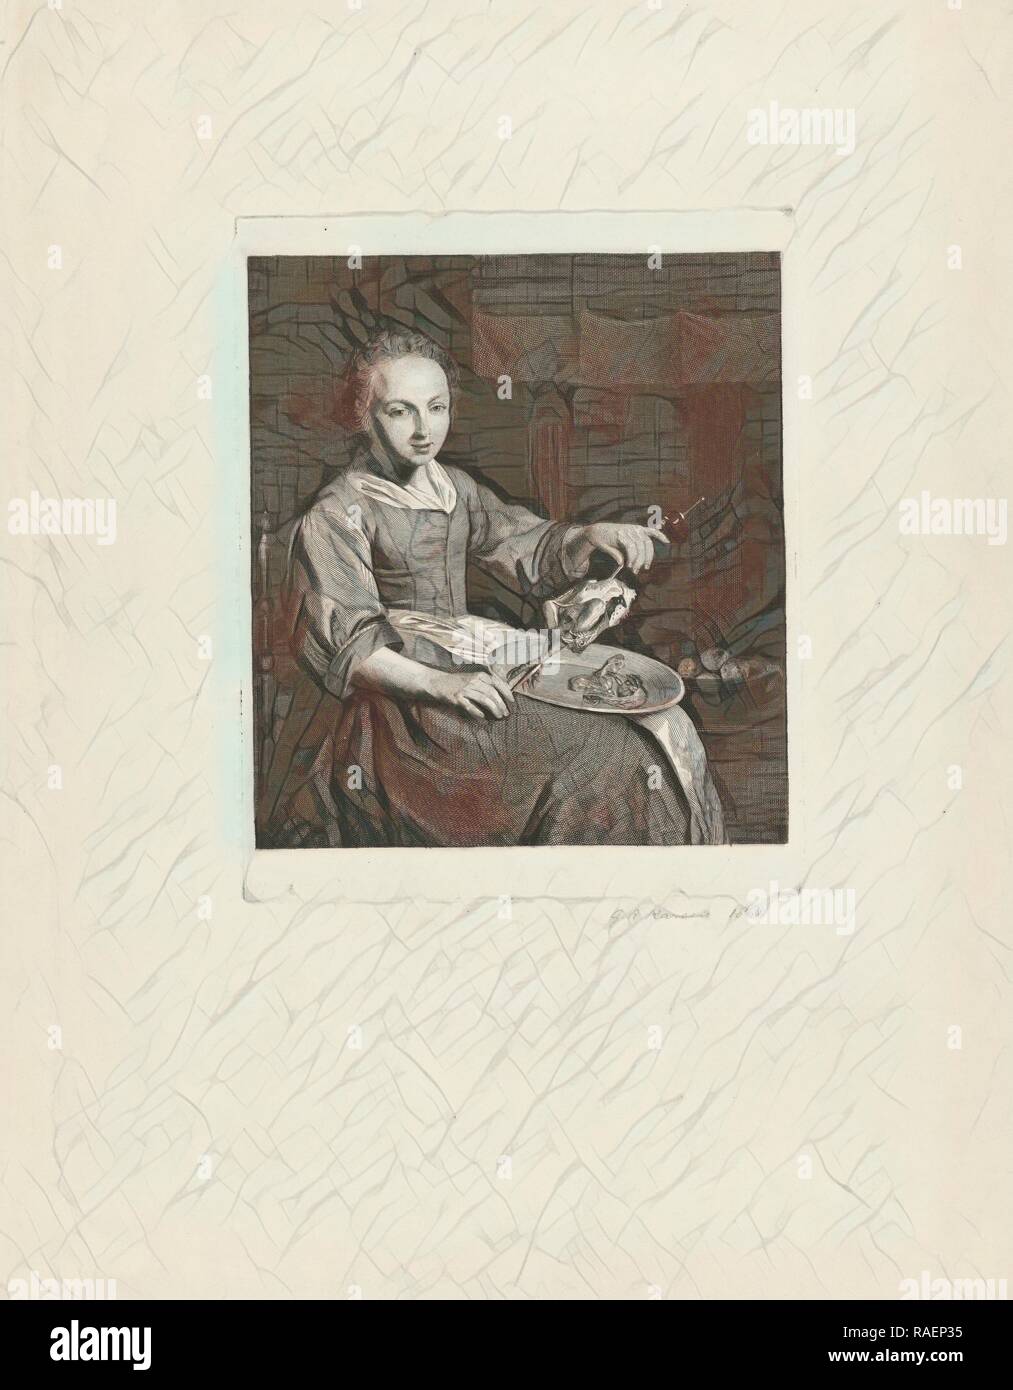 Polli allo spiedo, G.A. Karsen, 186. Reinventato da Gibon. Arte Classica con un tocco di moderno reinventato Foto Stock